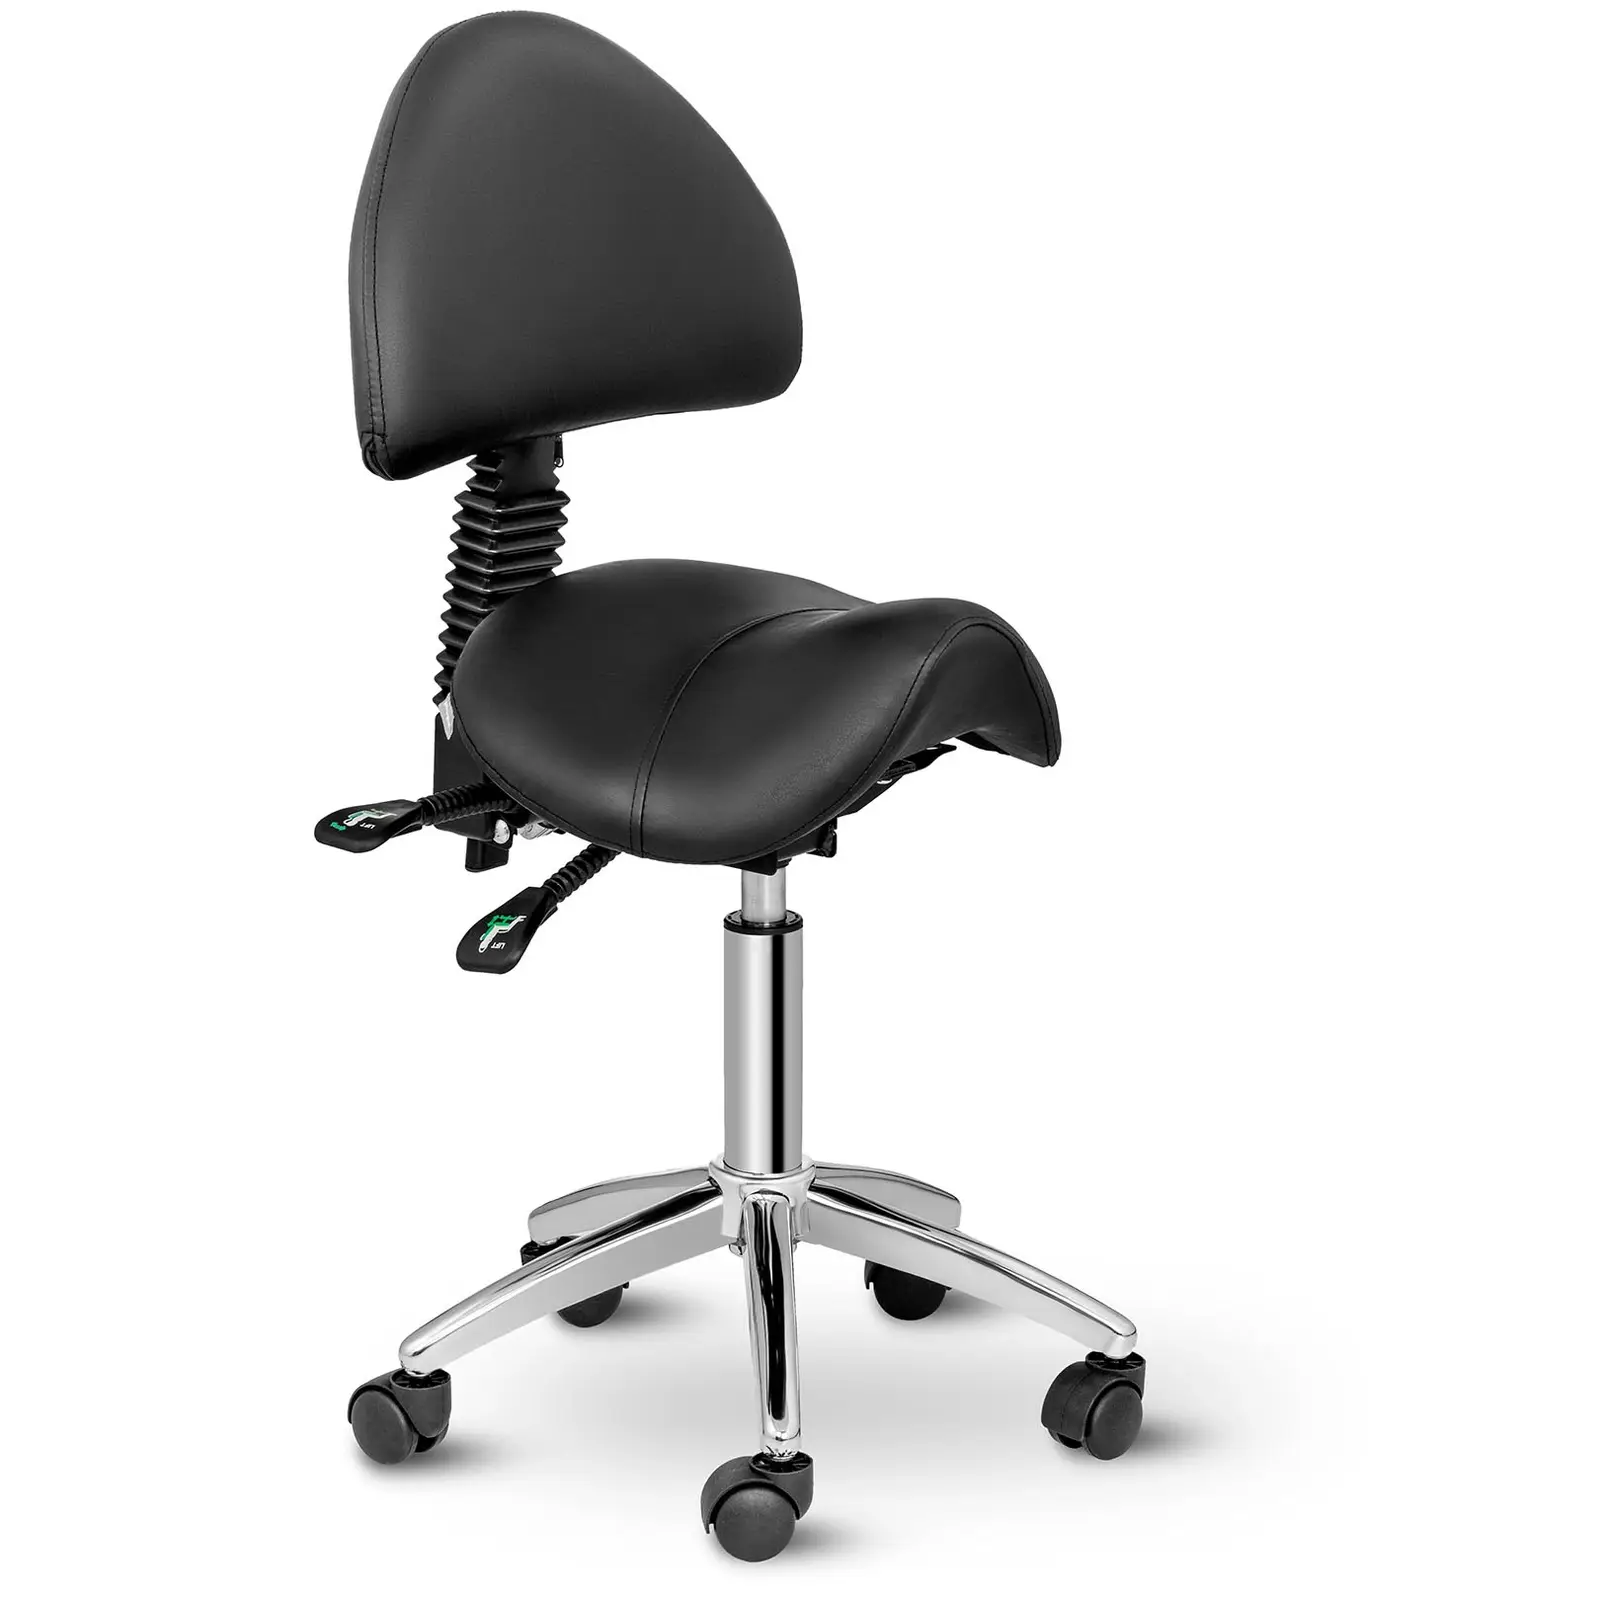 Sedlová židle 550–690 mm 150 kg černá - Sedlové židle physa